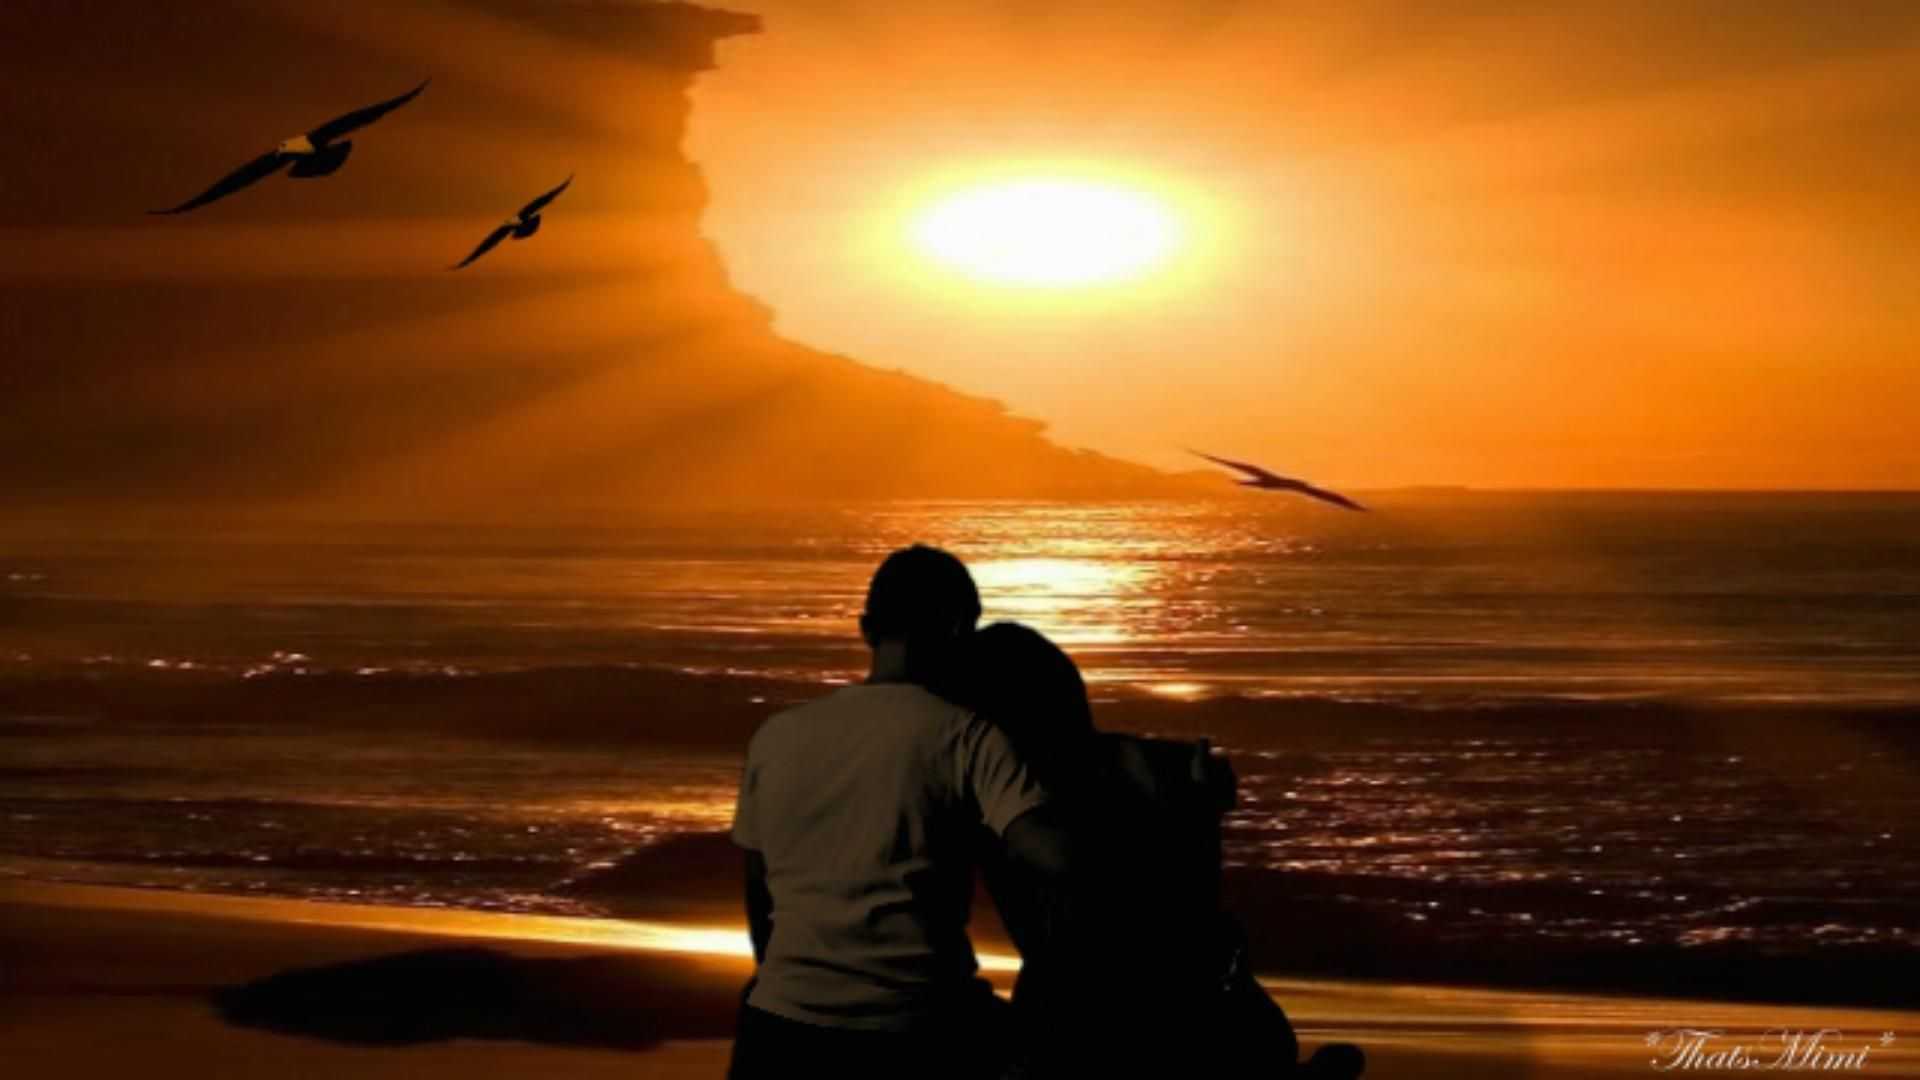 Top HD Romance Wallpaper. Love HD KB. Beach sunset